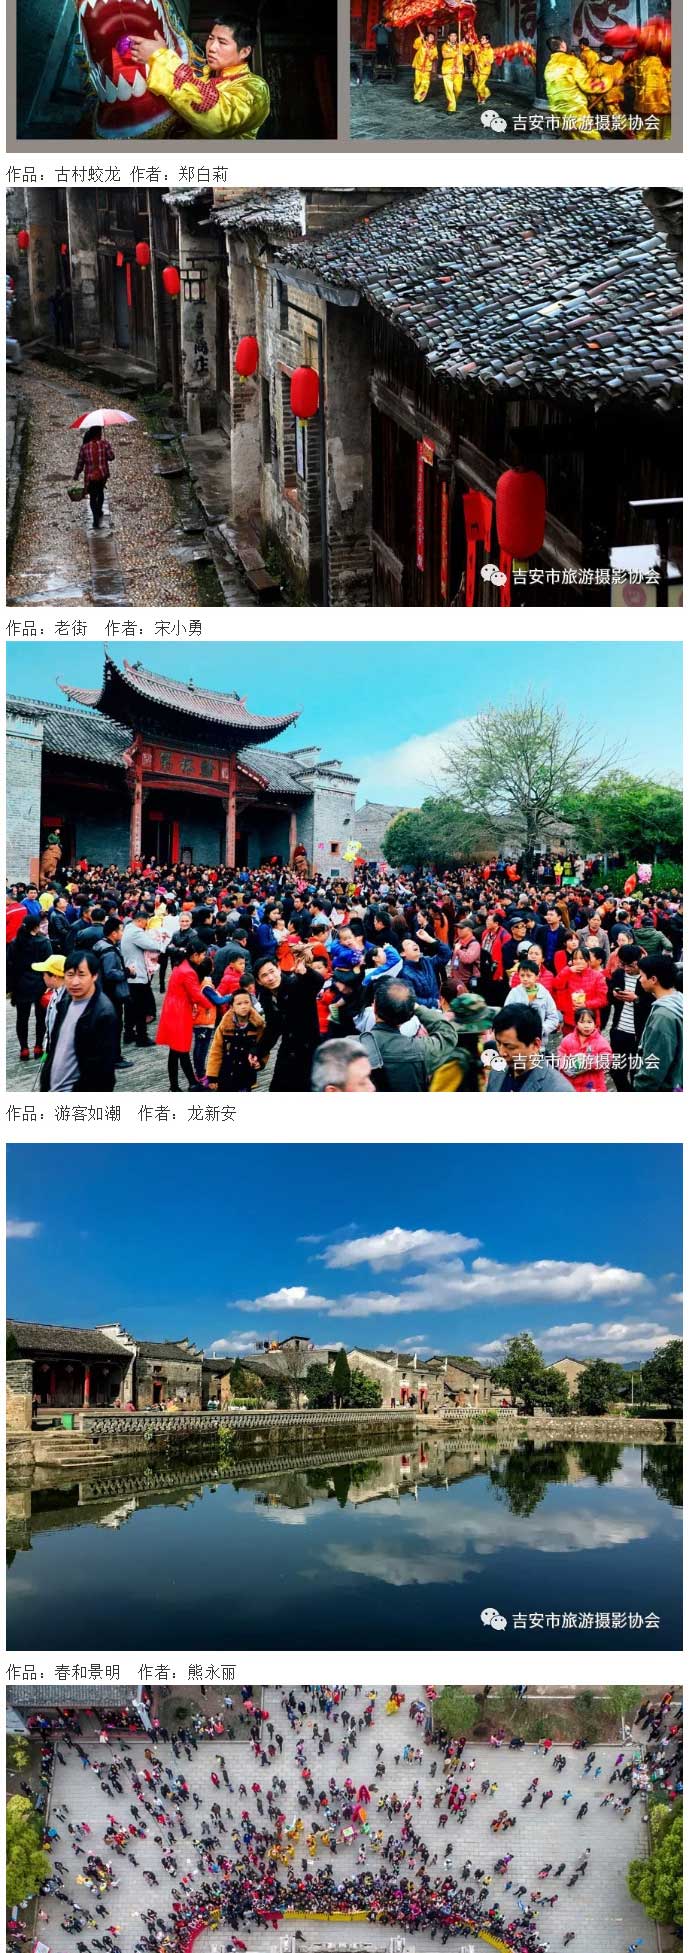 快来瞧！一场千年古村视觉盛宴！第一届中国•渼陂旅游摄影大赛获奖作品选